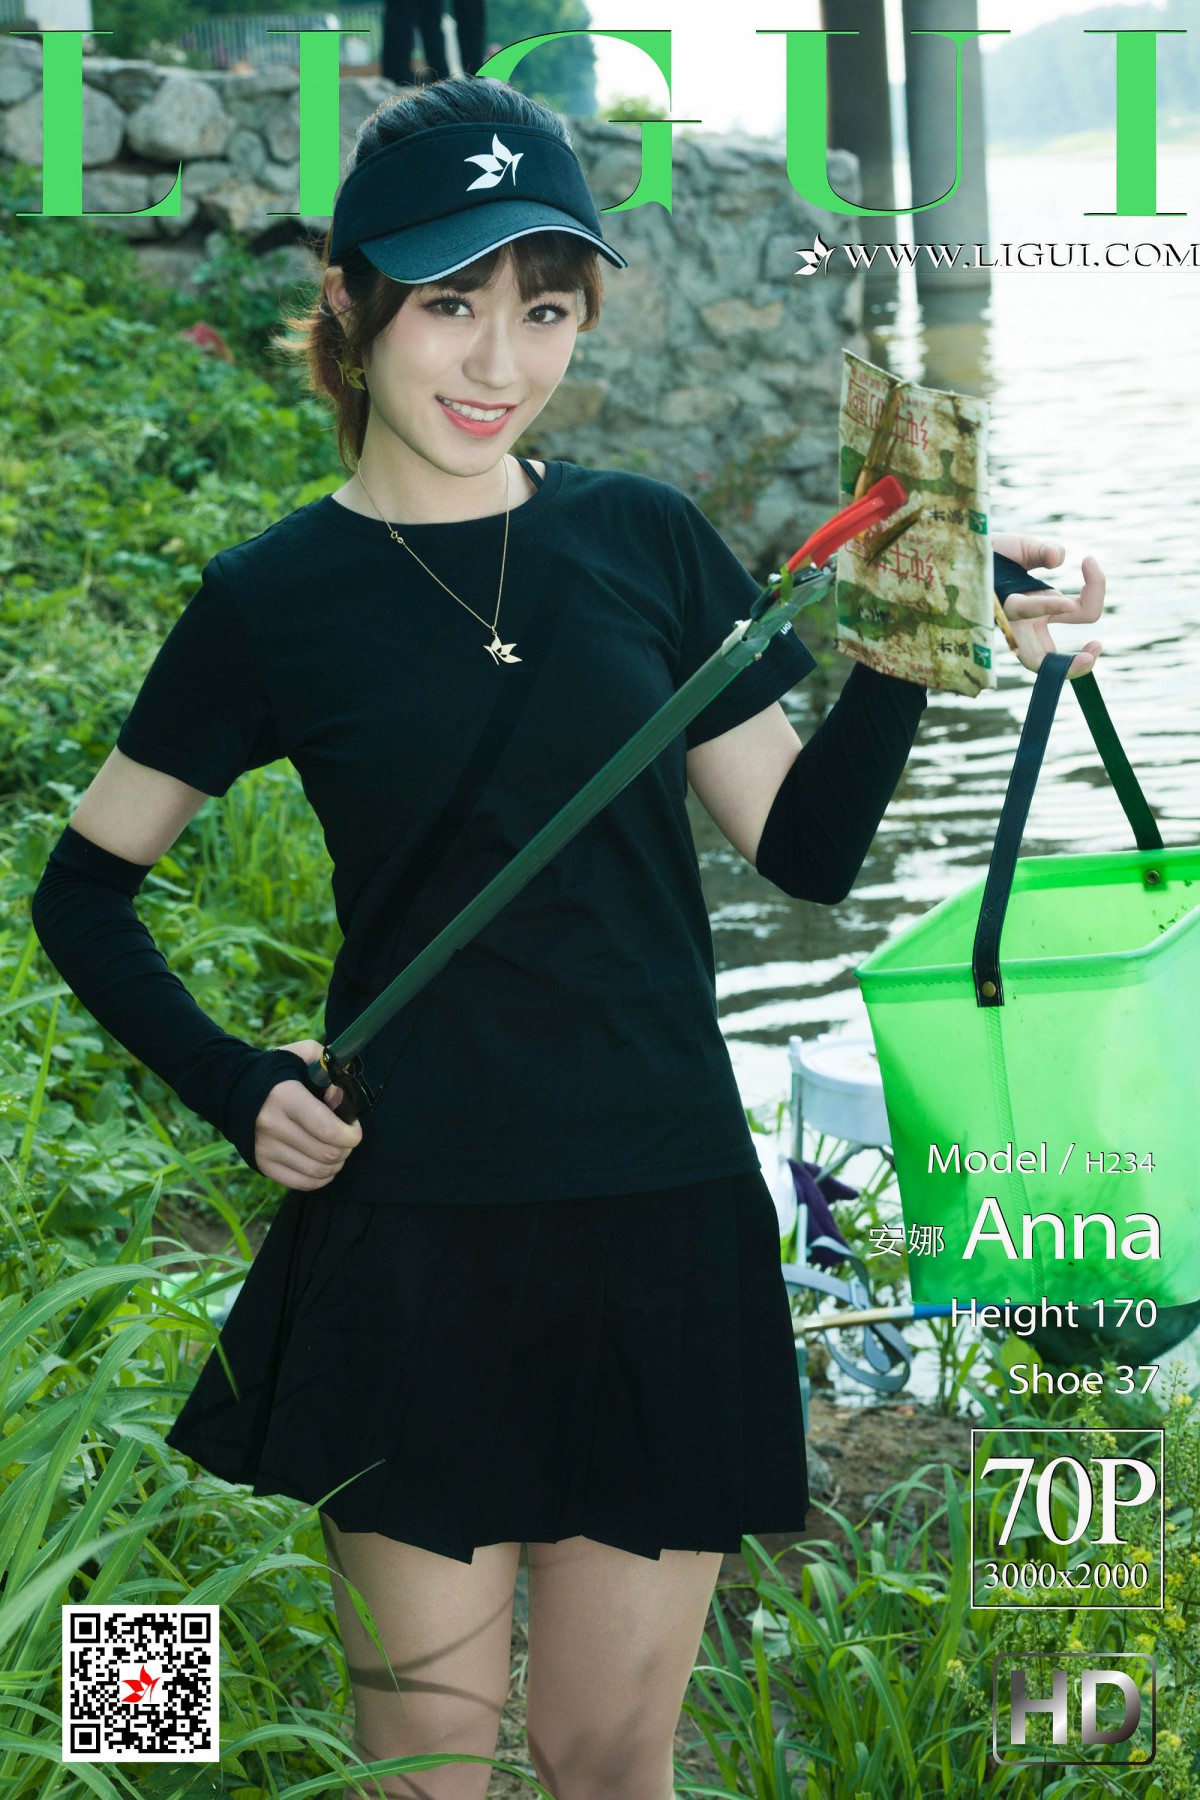 [Ligui丽柜]2019.06.26 Model 安娜Anna